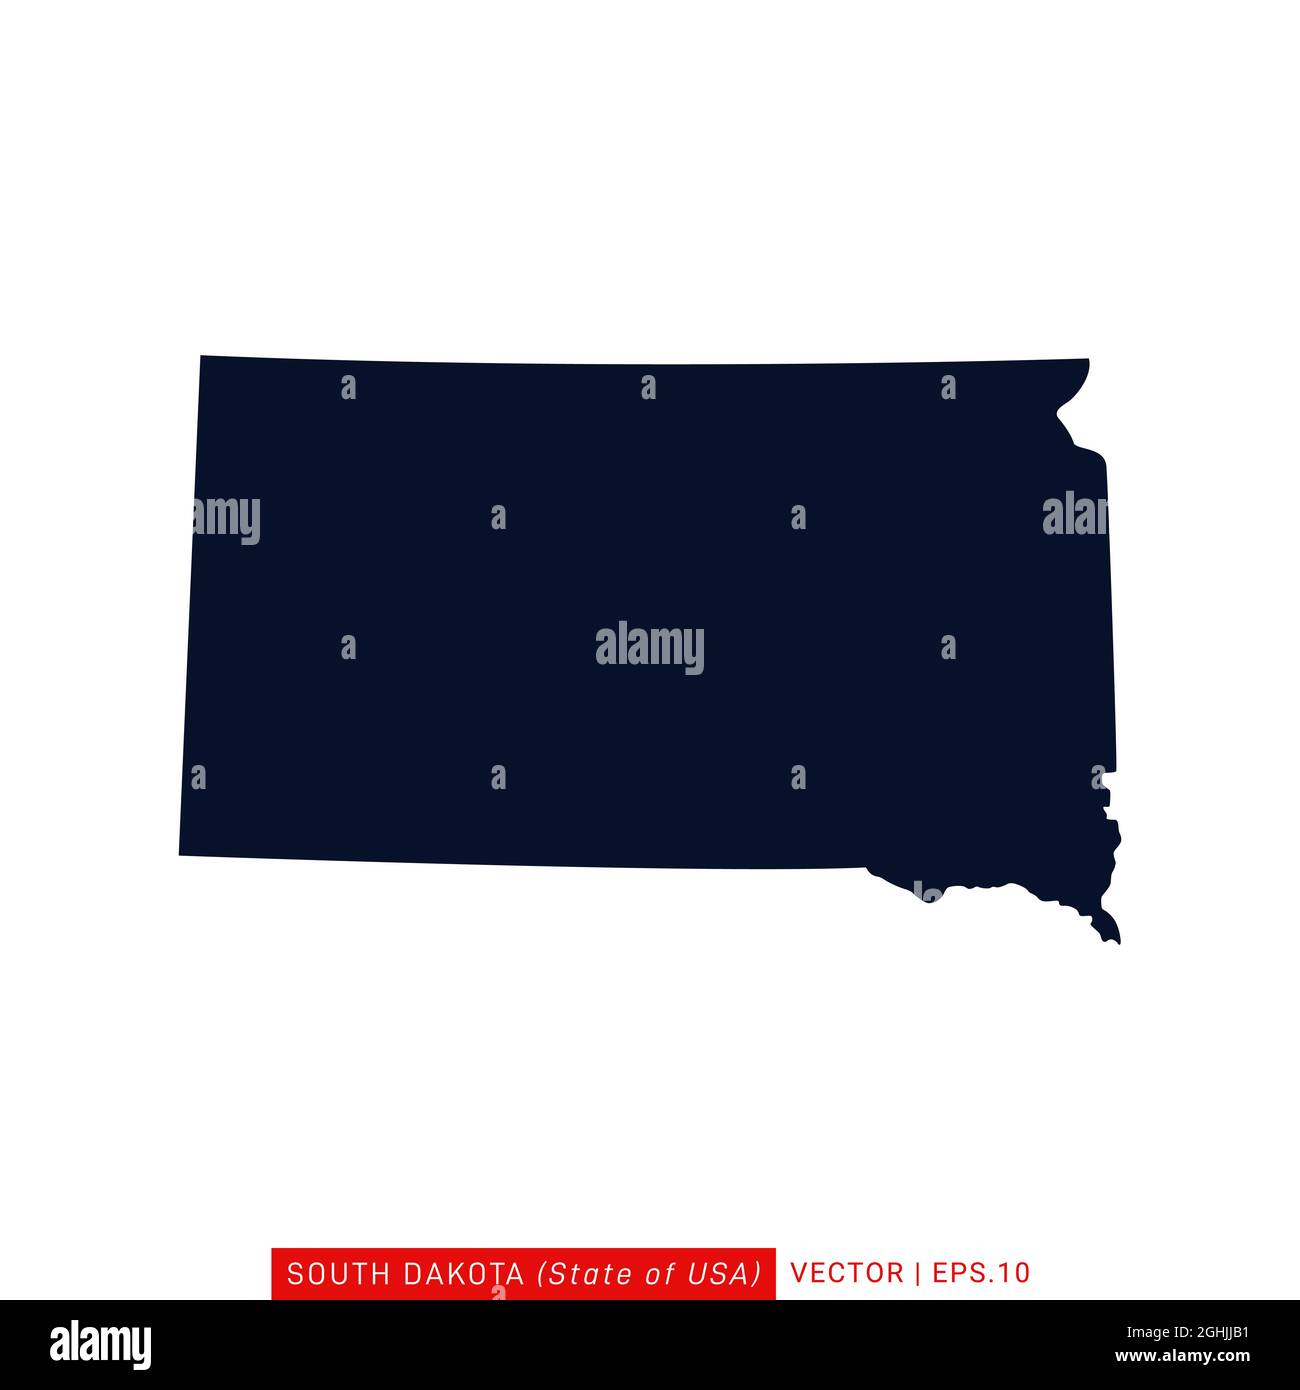 Modèle de conception d'illustrations vectorielles du Dakota du Sud (États-Unis). Vecteur eps 10. Illustration de Vecteur